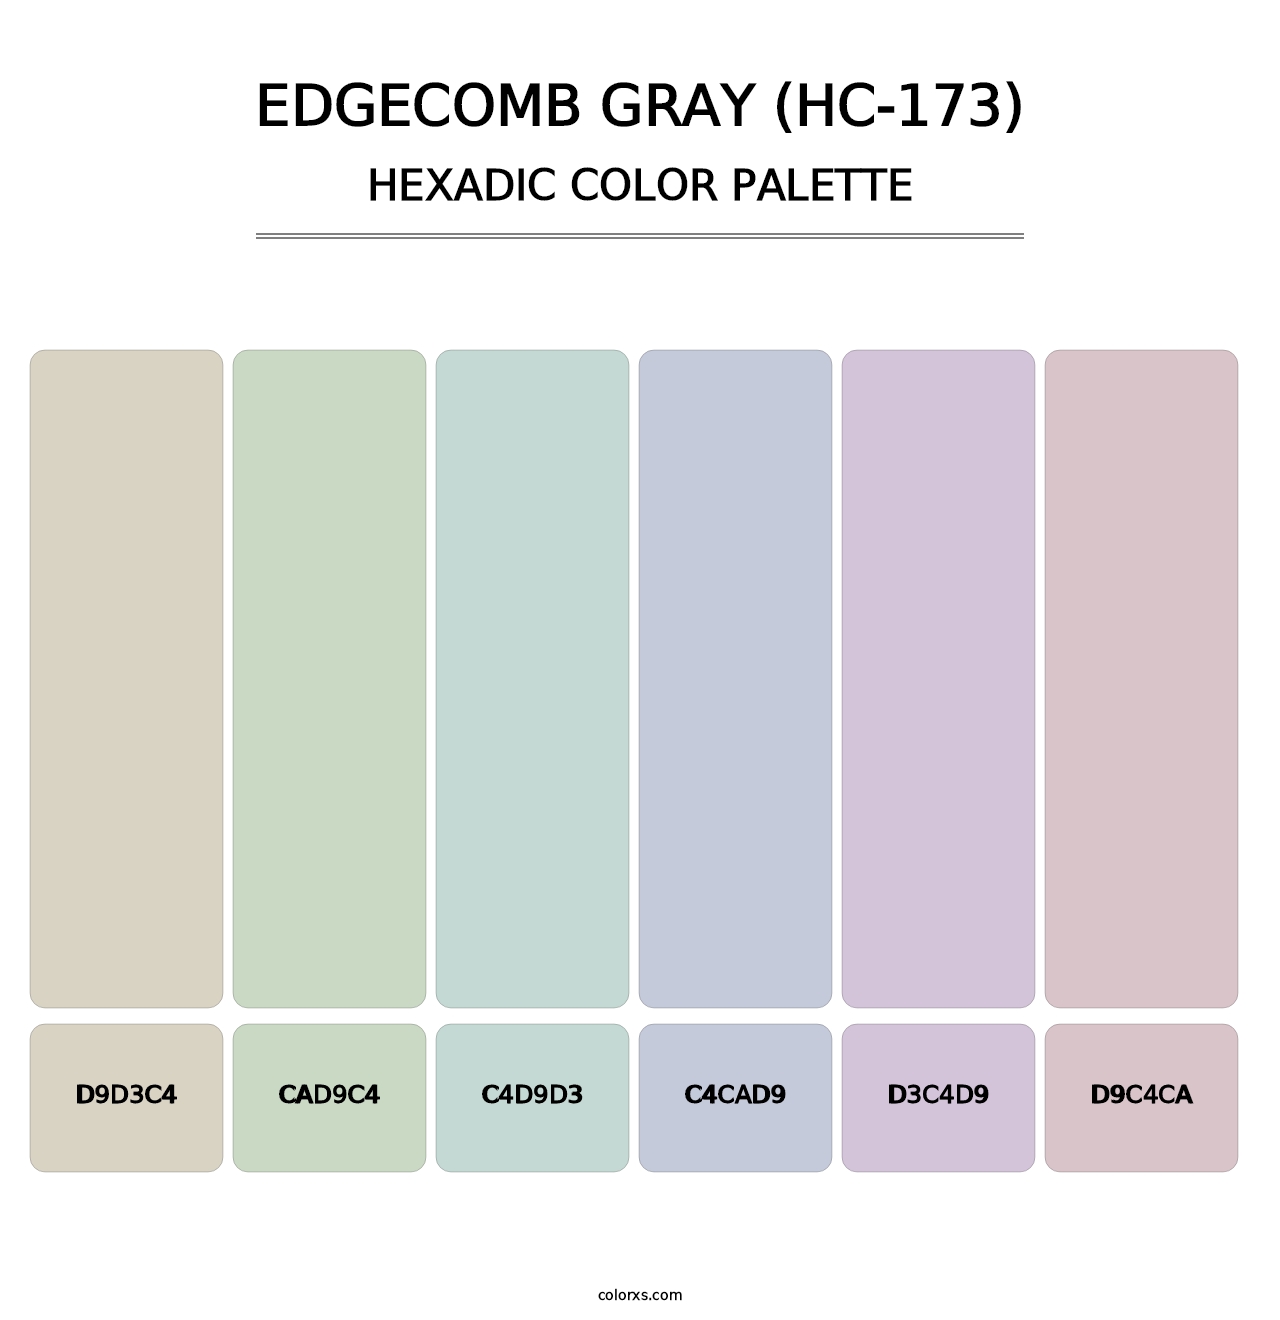 Edgecomb Gray (HC-173) - Hexadic Color Palette